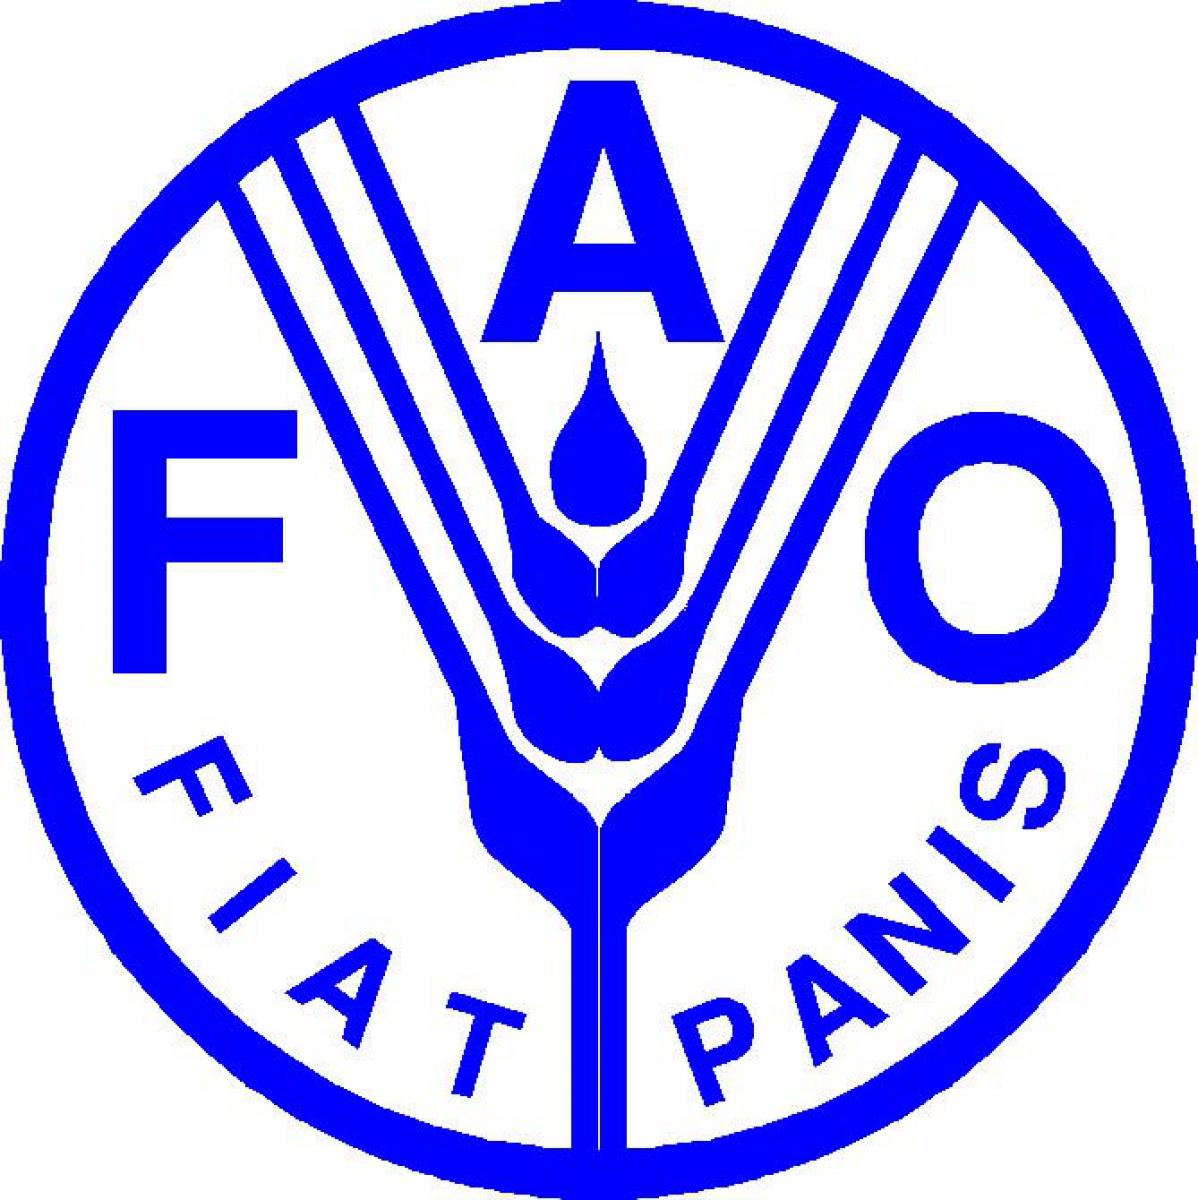 Сельскохозяйственная организация оон. Продовольственная и сельскохозяйственная организация ООН (FAO). Всемирная организация продовольствия (ФАО). Продовольственная и сельскохозяйственная организация ООН — ФАО цель. ФАО логотип.